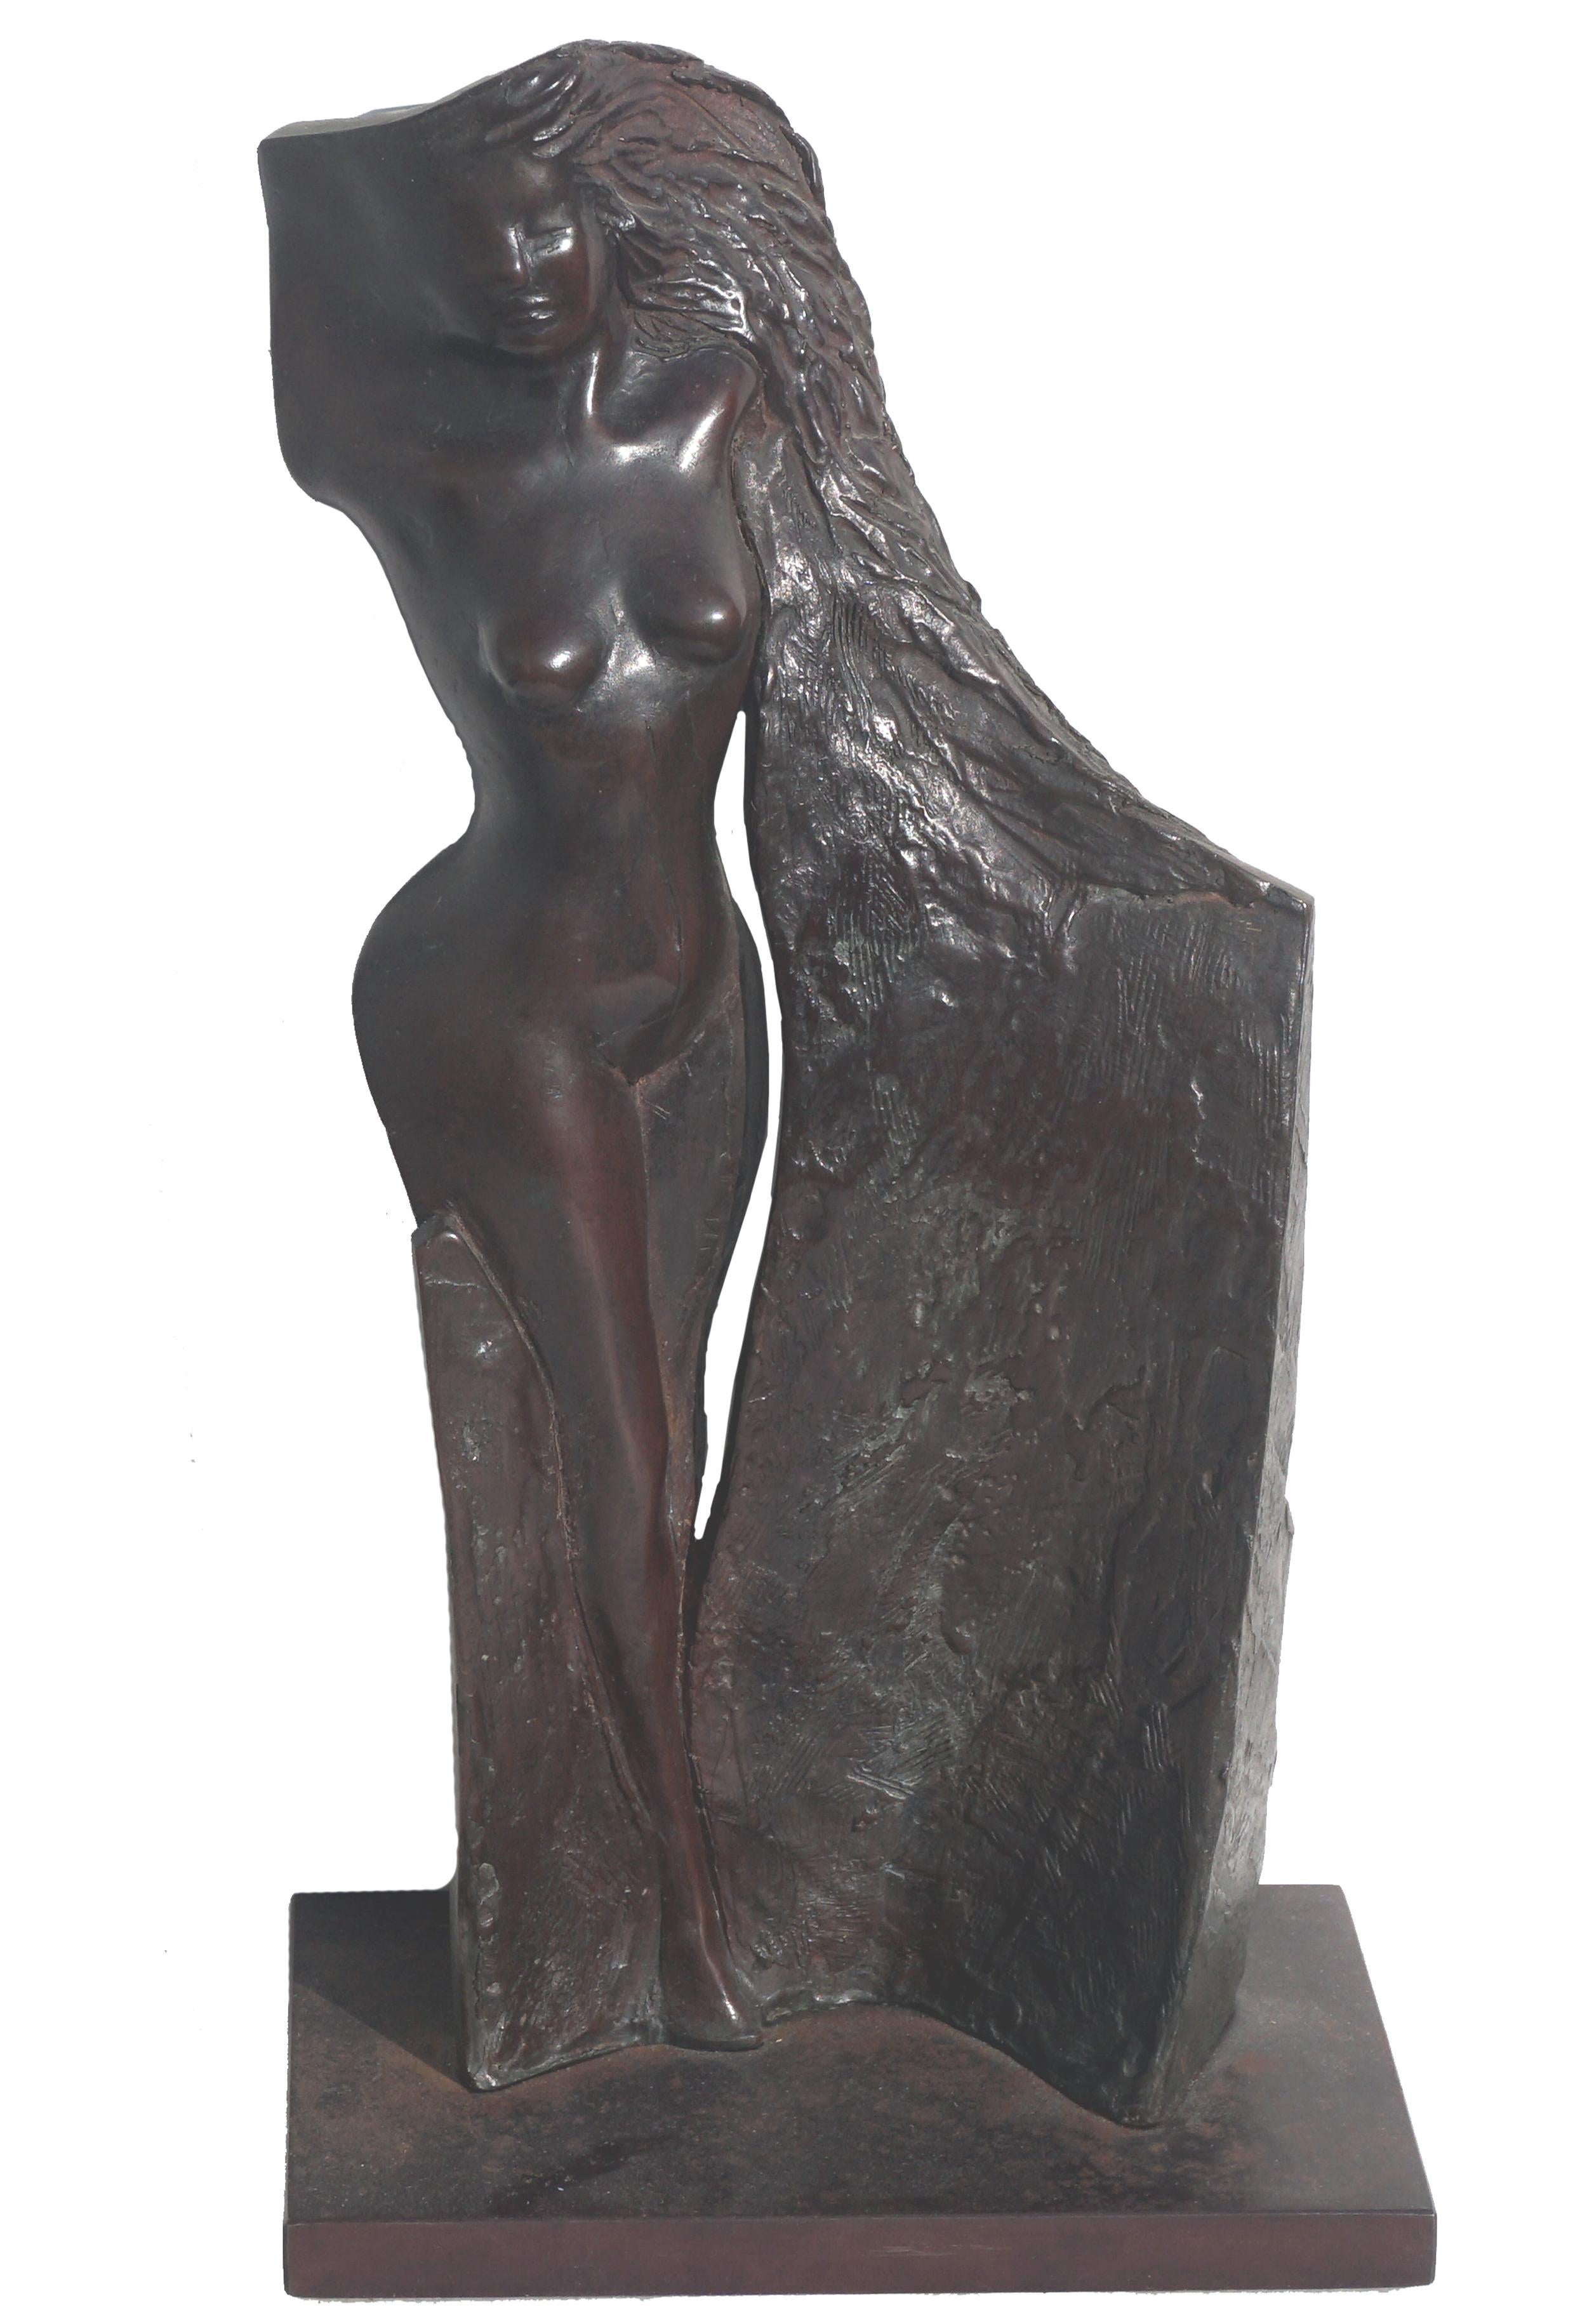 Francis Xavier Bracken Nude Sculpture - Modernist Bronze Sculpture of a Nude Woman